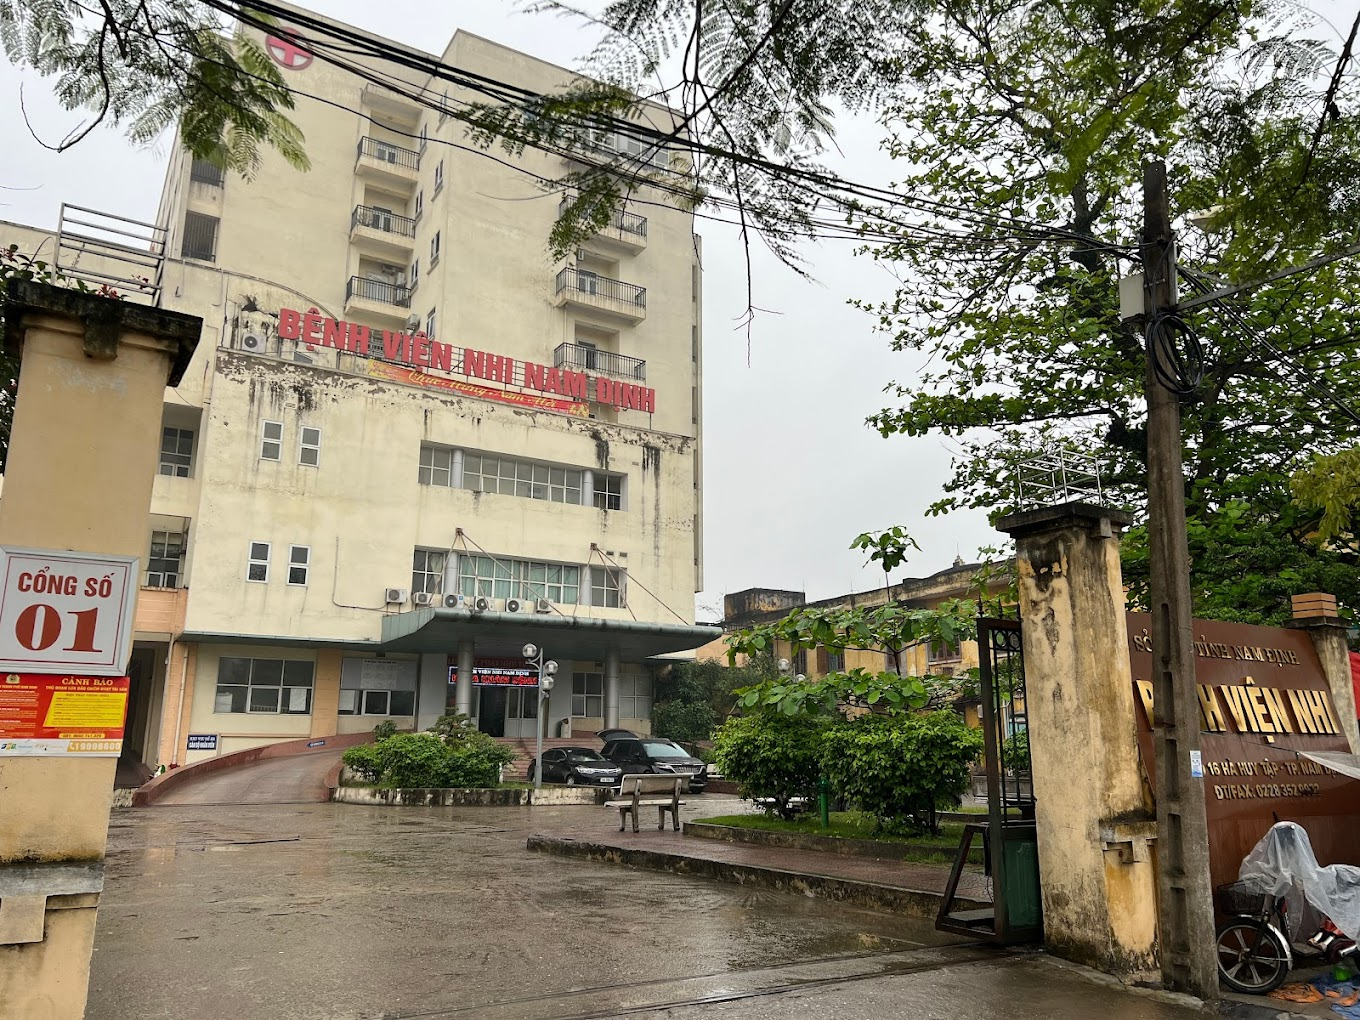 Nhiều bệnh viện, phòng khám tại Nam Định dùng máy điện tim, X-quang hết hiệu lực kiểm định